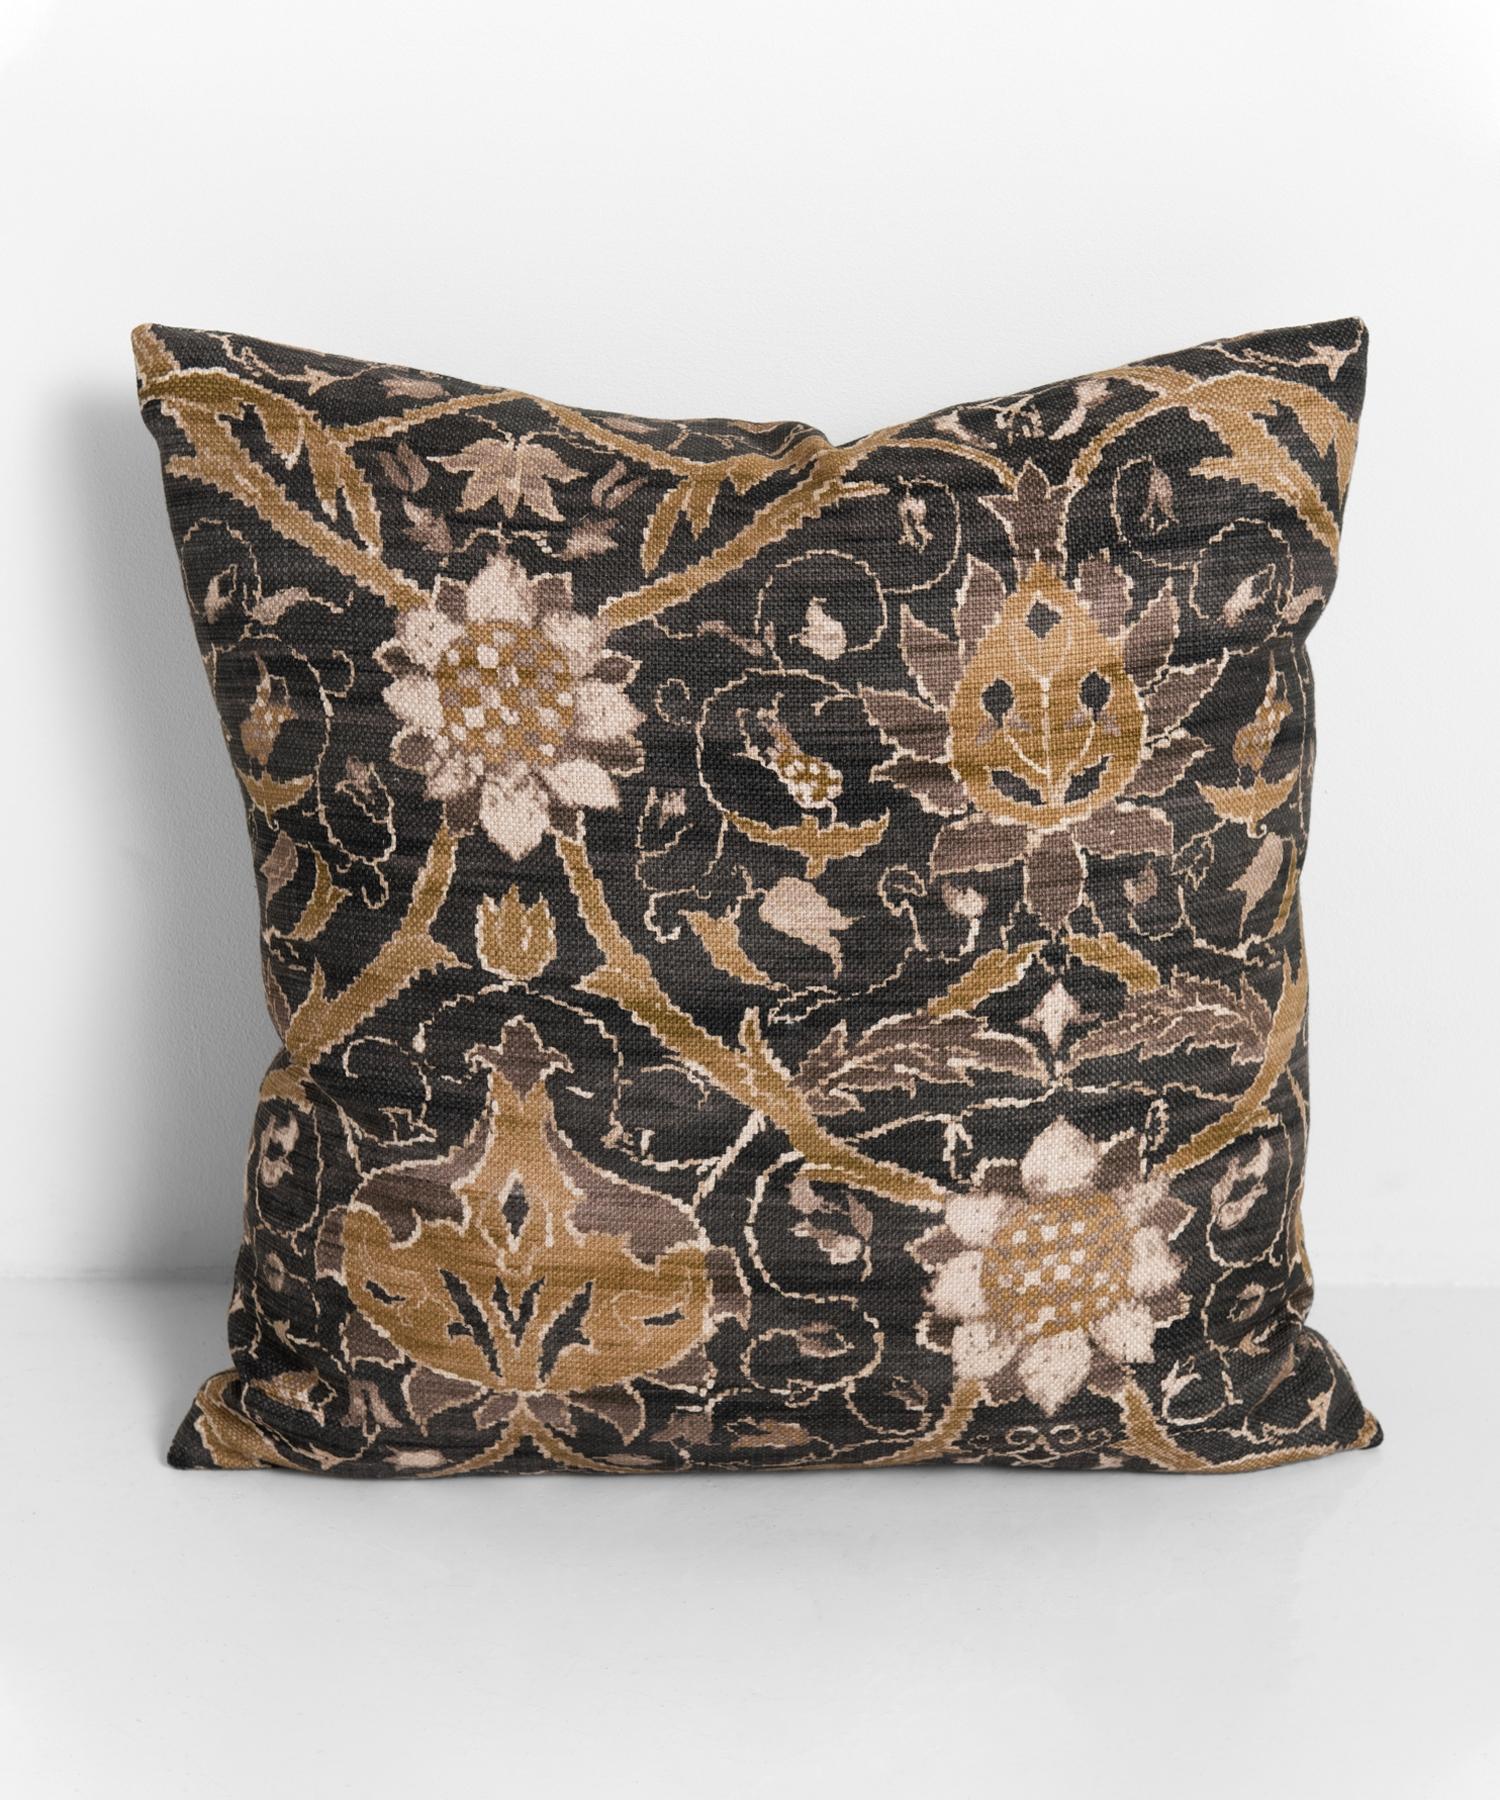 William Morris Pillows, 21st Century